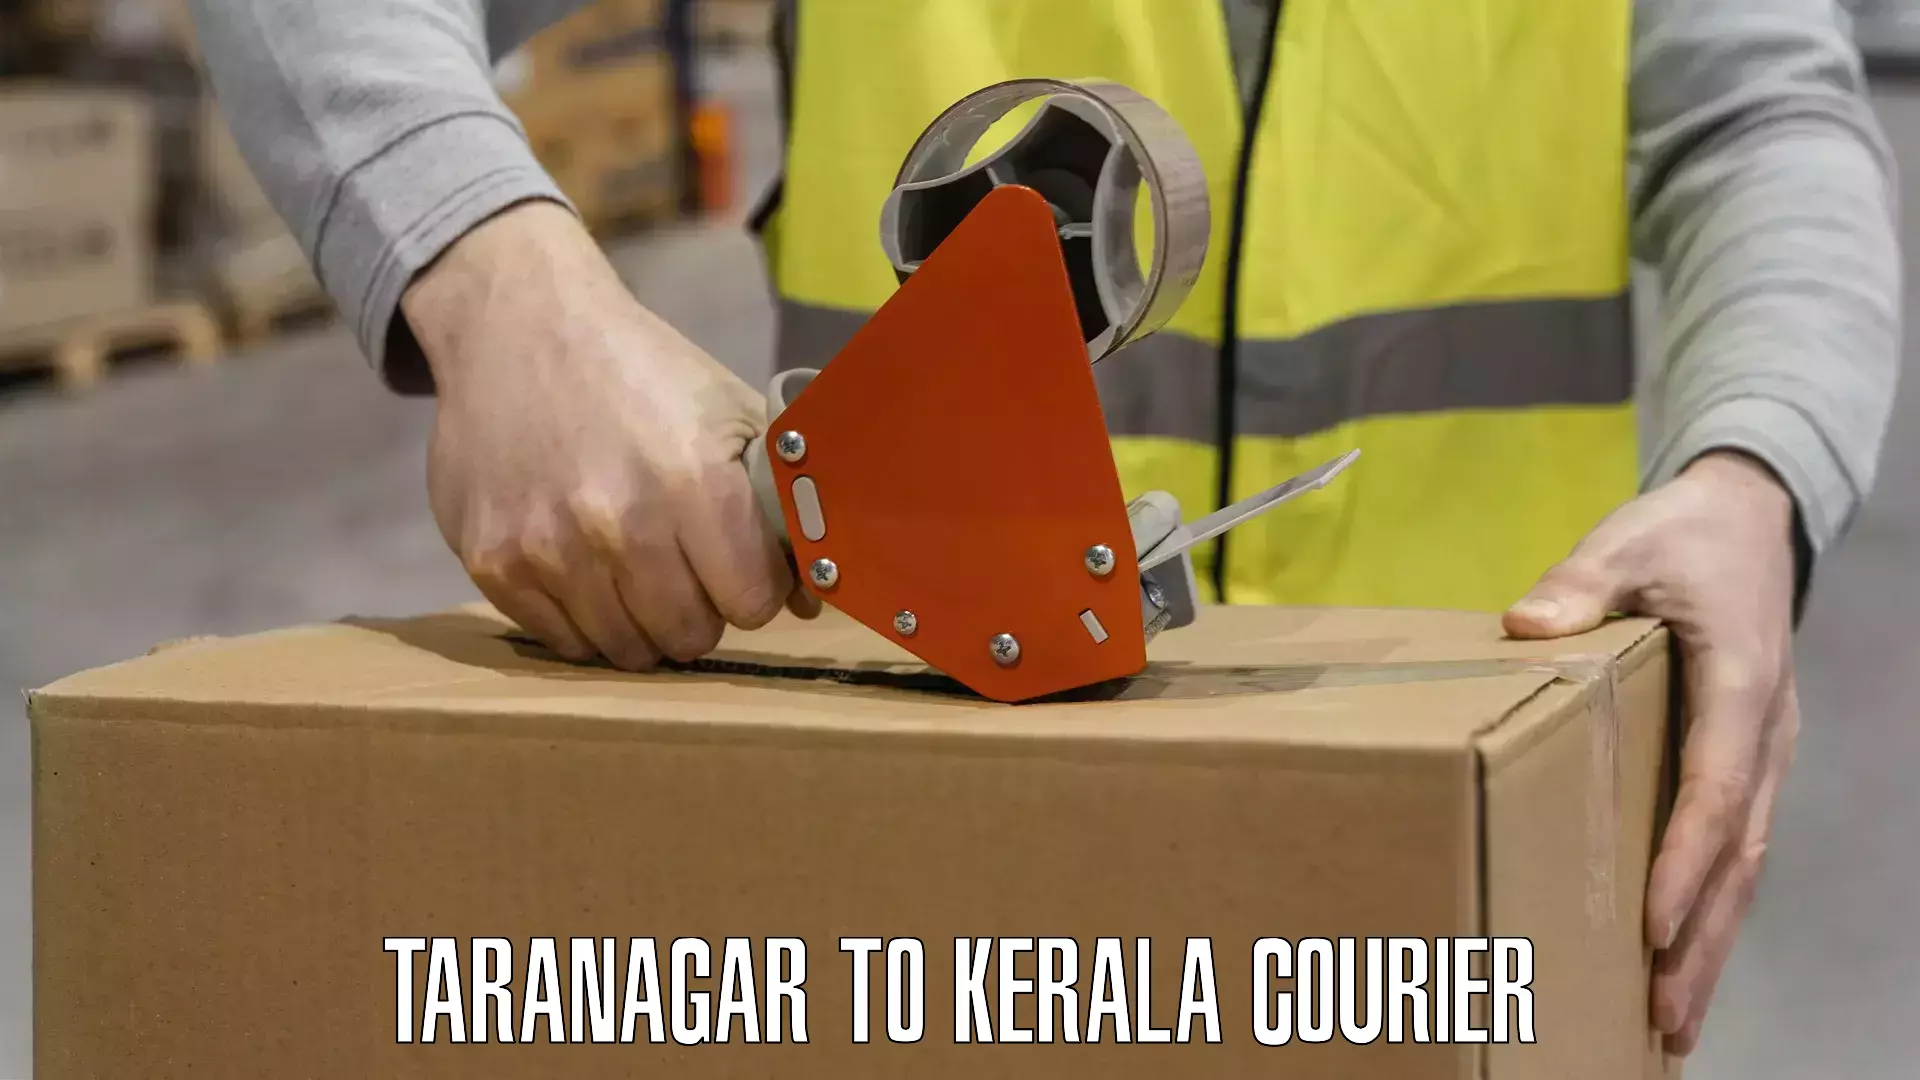 Advanced courier platforms Taranagar to Ponekkara